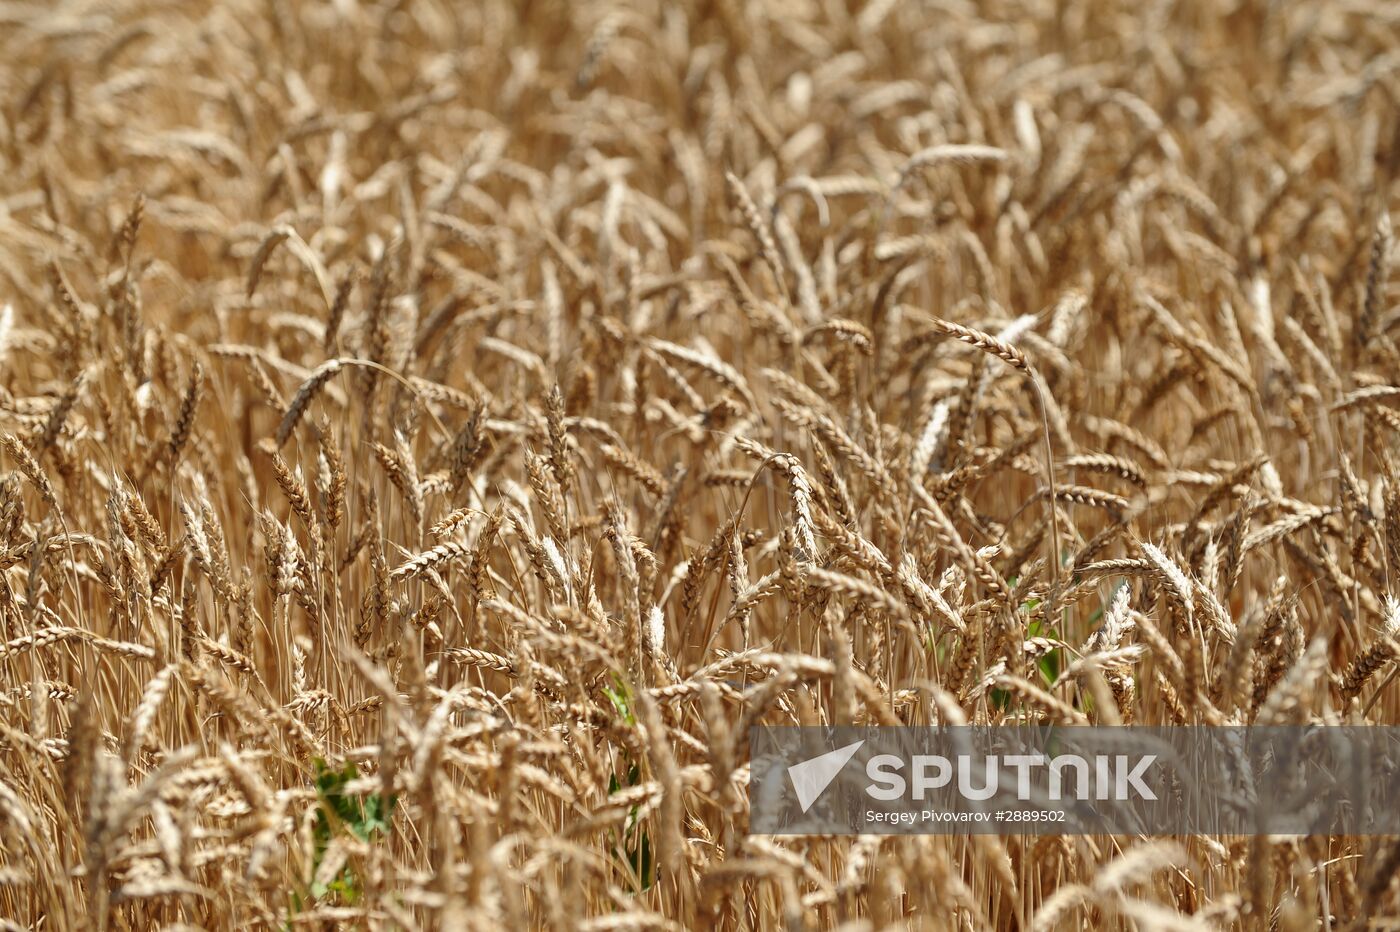 Harvesting wheat in the Rostov Region